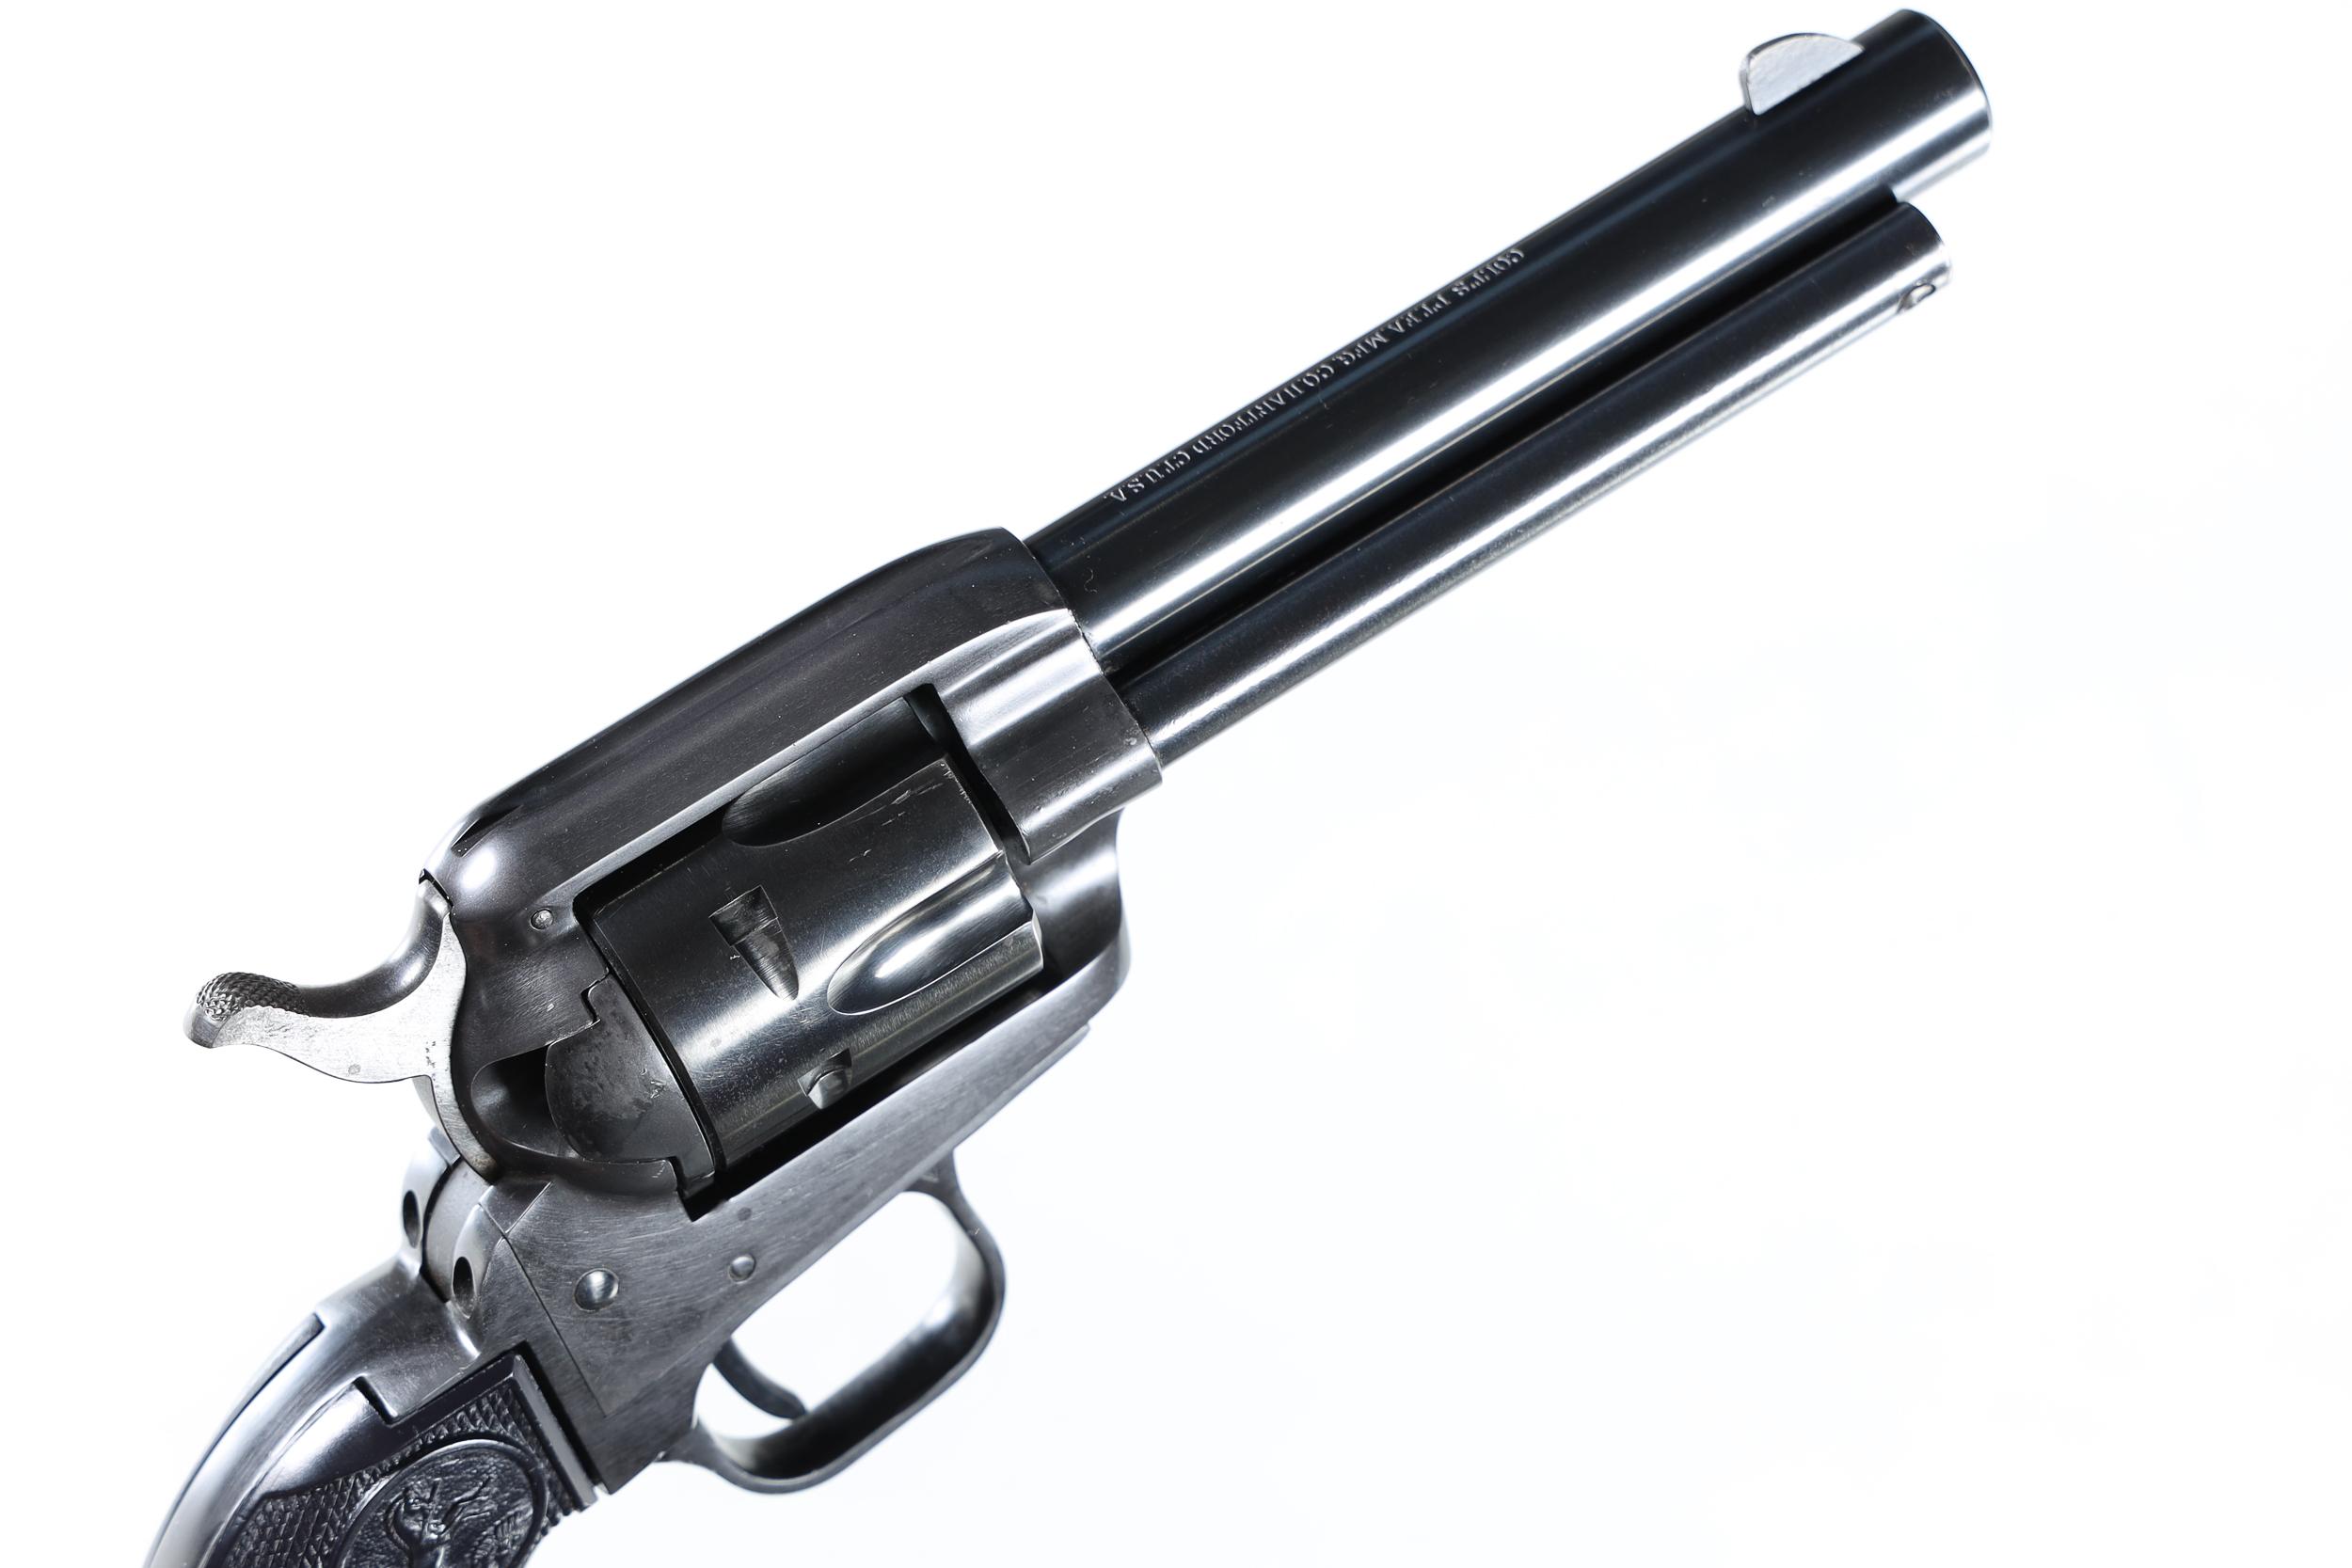 Colt Frontier Scout Revolver .22 lr